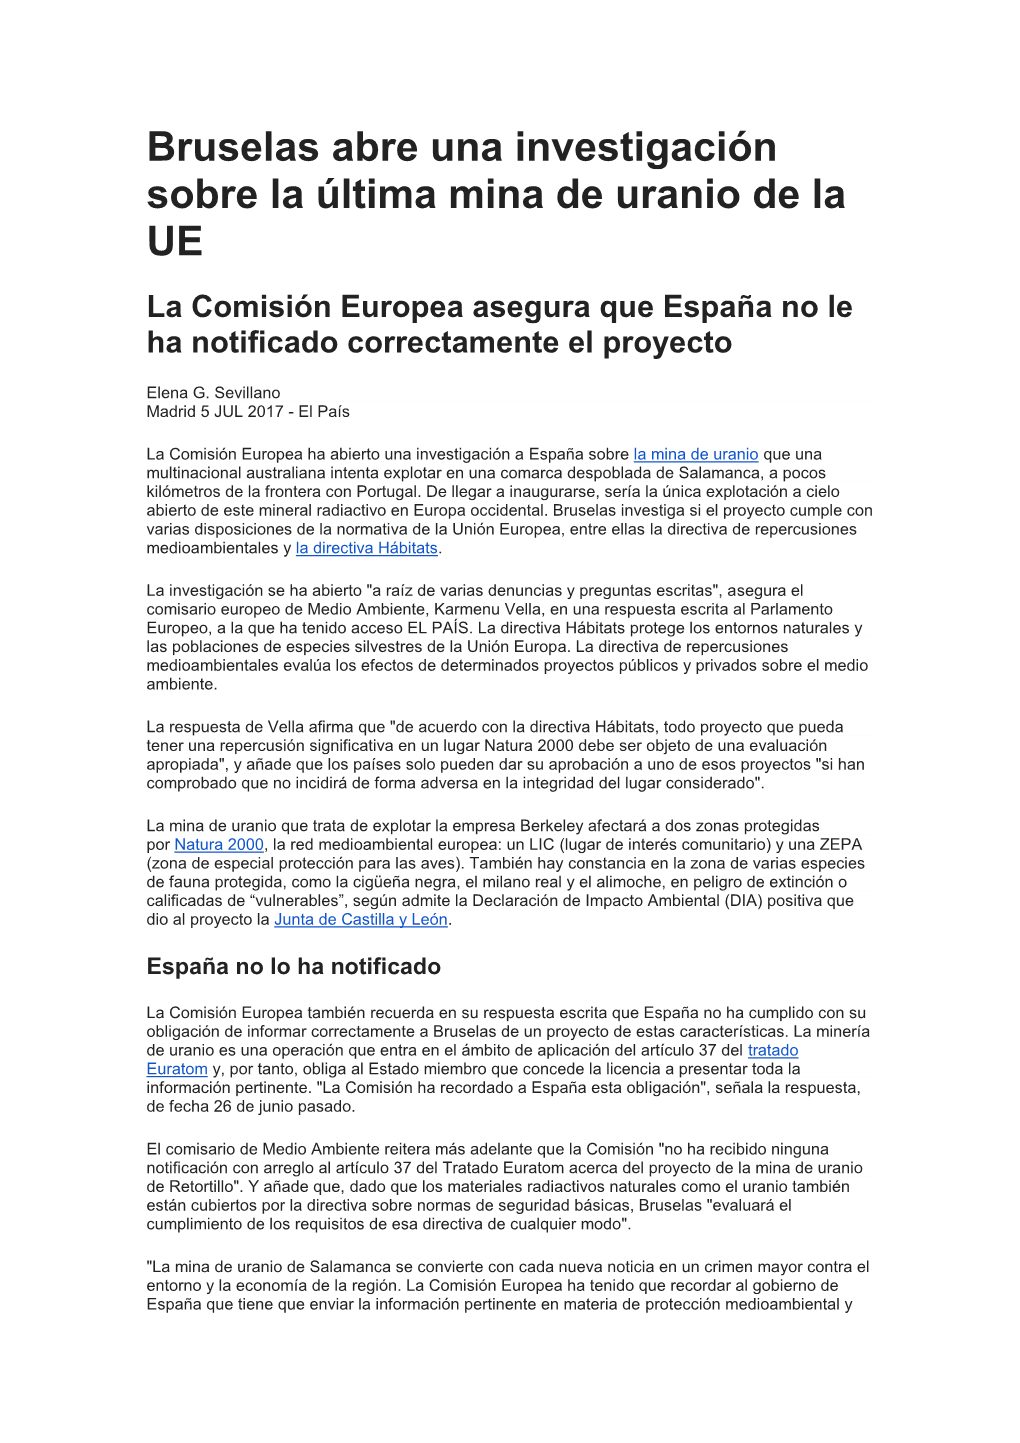 Bruselas Abre Una Investigación Sobre La Última Mina De Uranio De La UE La Comisión Europea Asegura Que España No Le Ha Notificado Correctamente El Proyecto